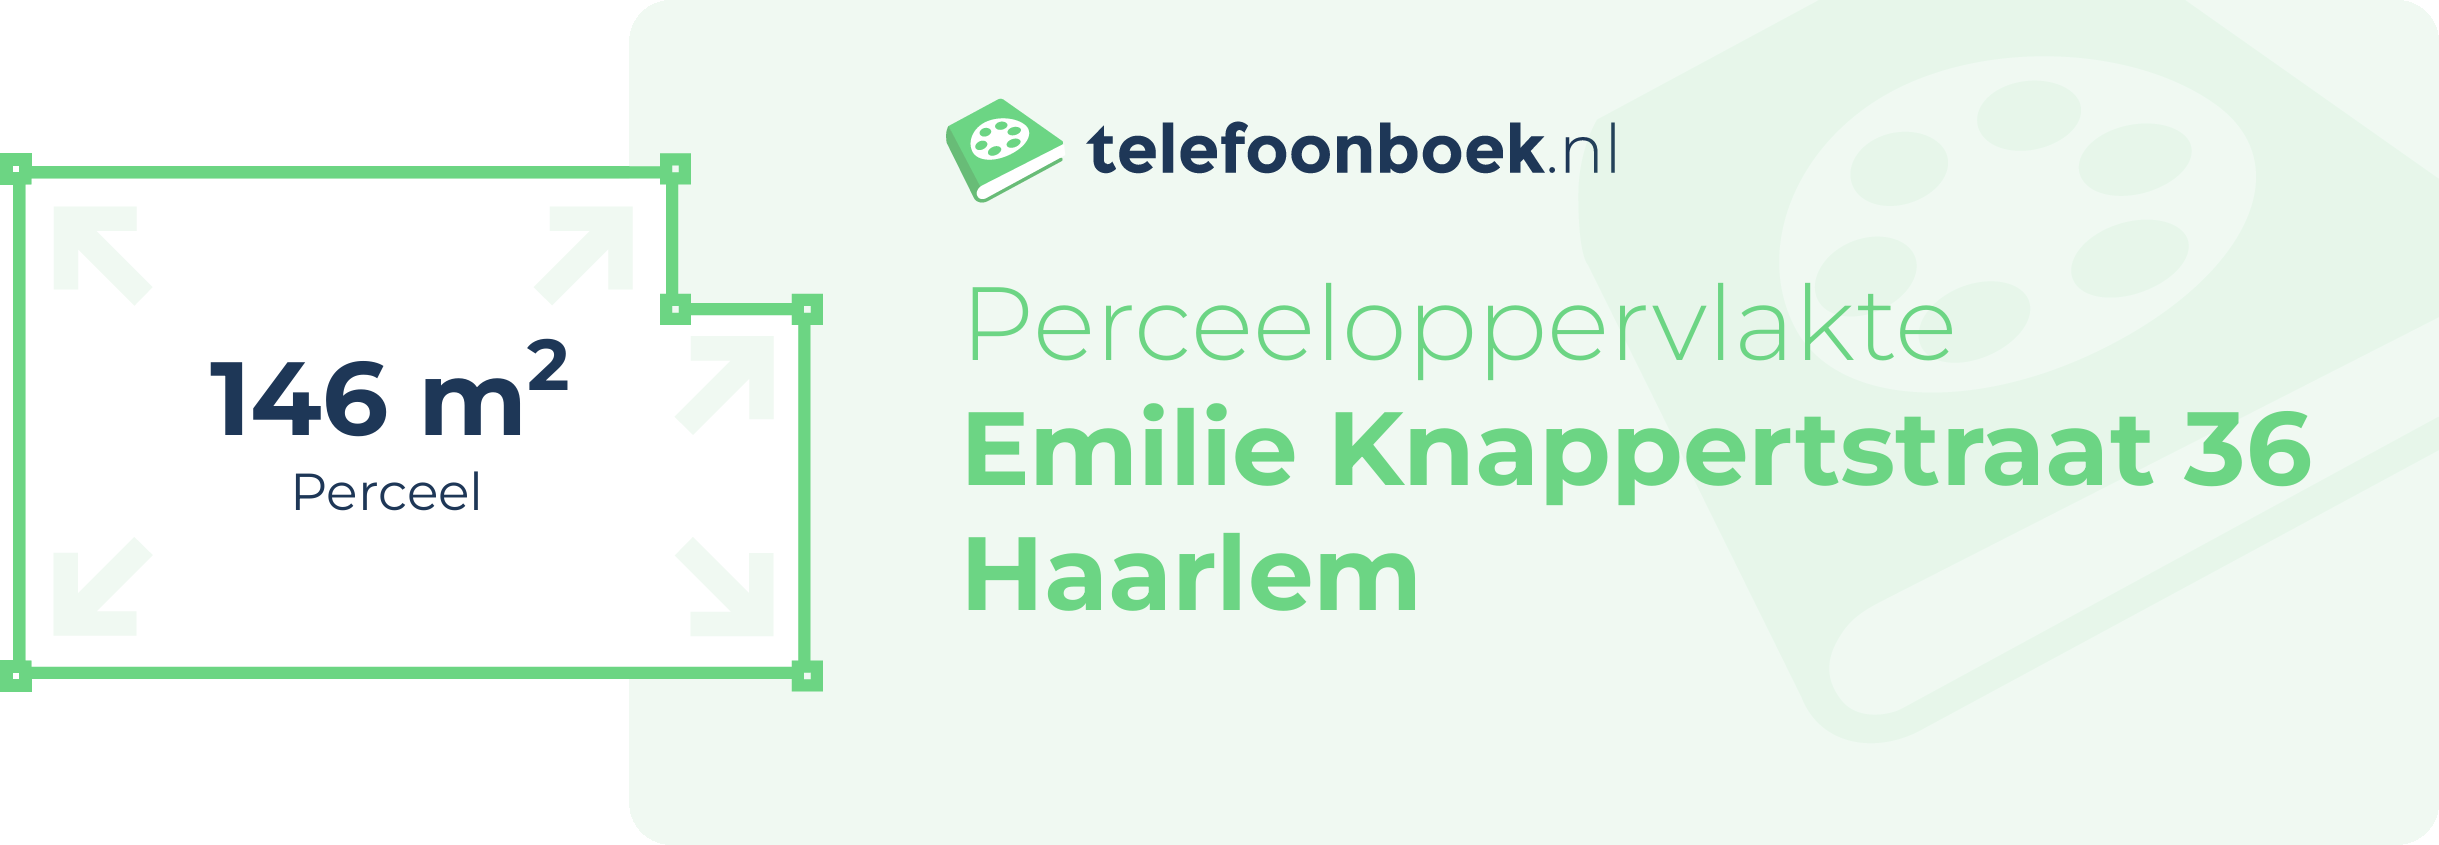 Perceeloppervlakte Emilie Knappertstraat 36 Haarlem